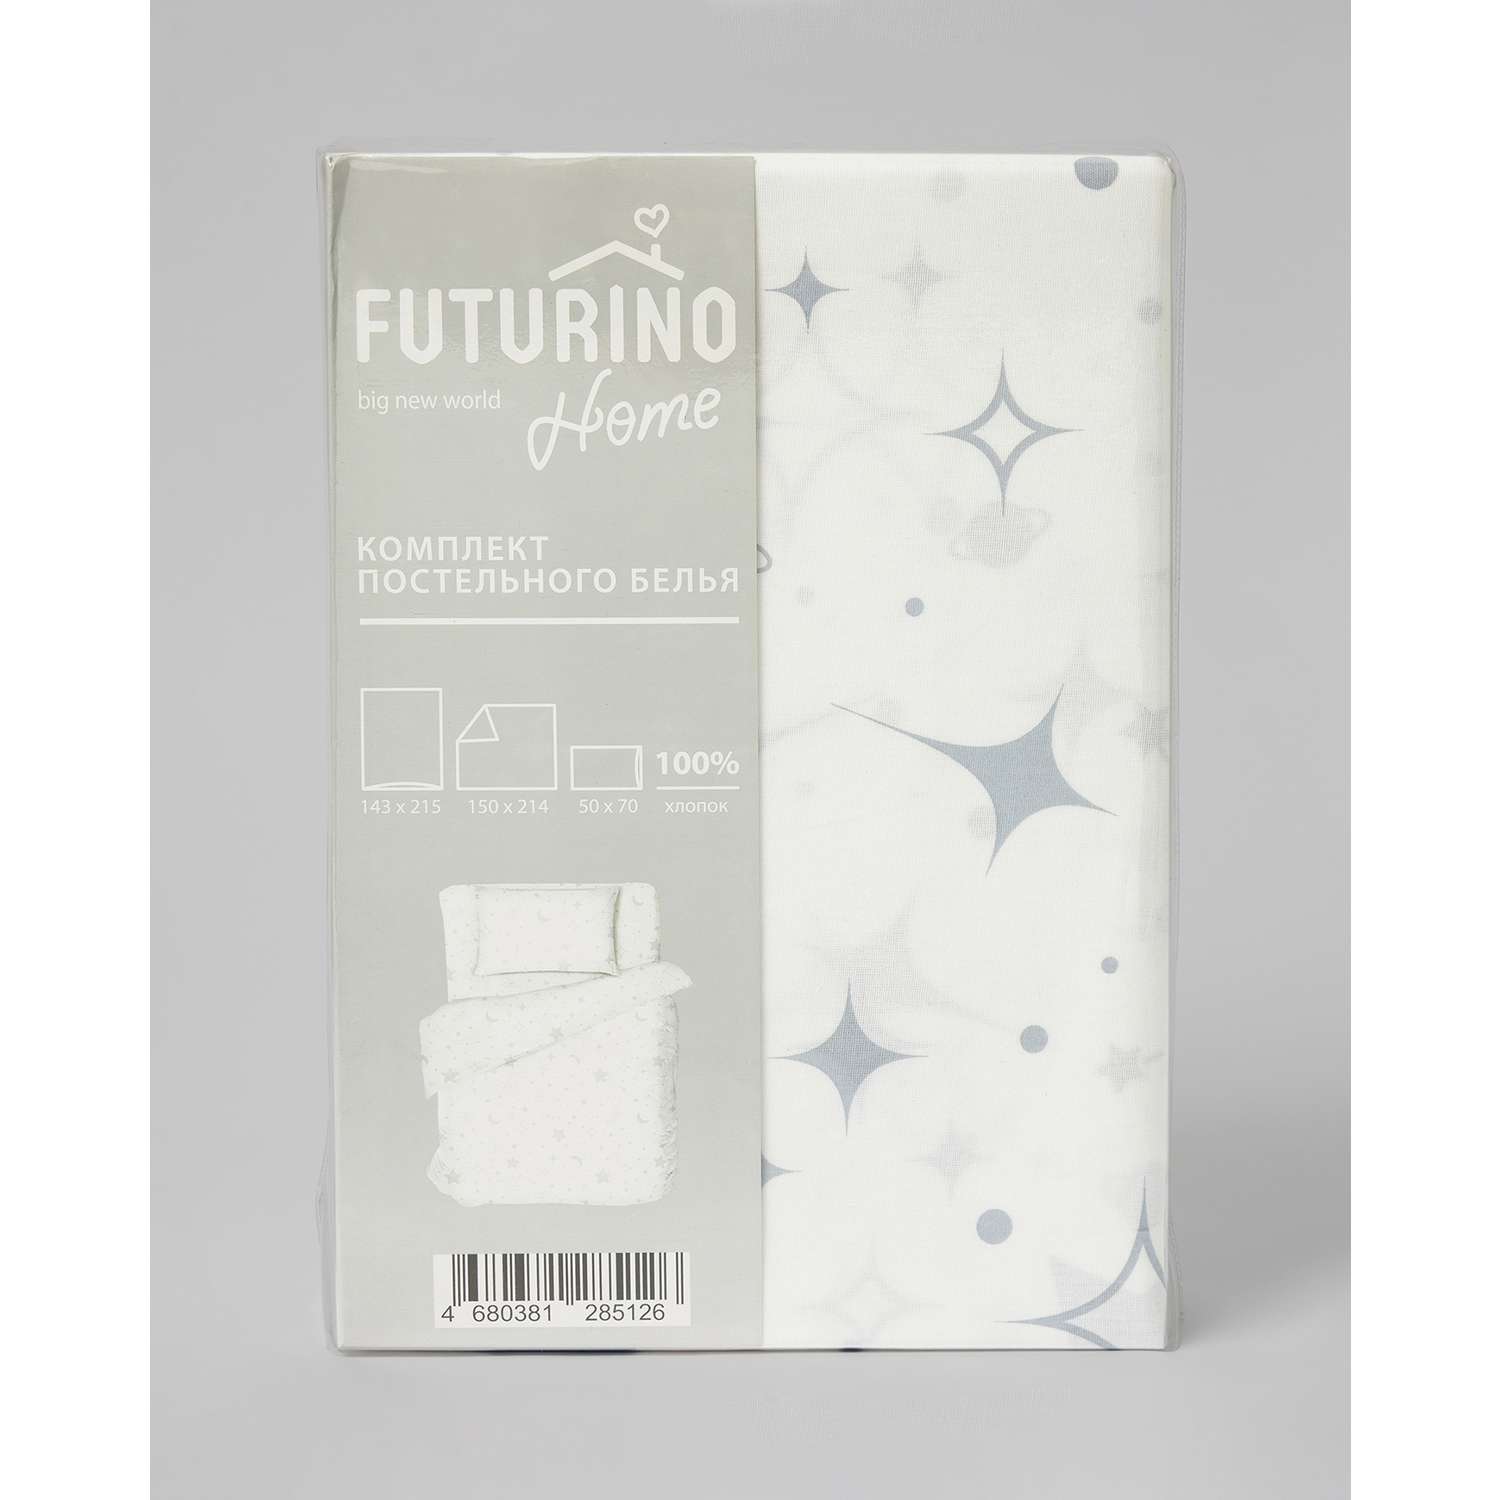 Комплект постельного белья Futurino Home 3 предмета 297830 - фото 1